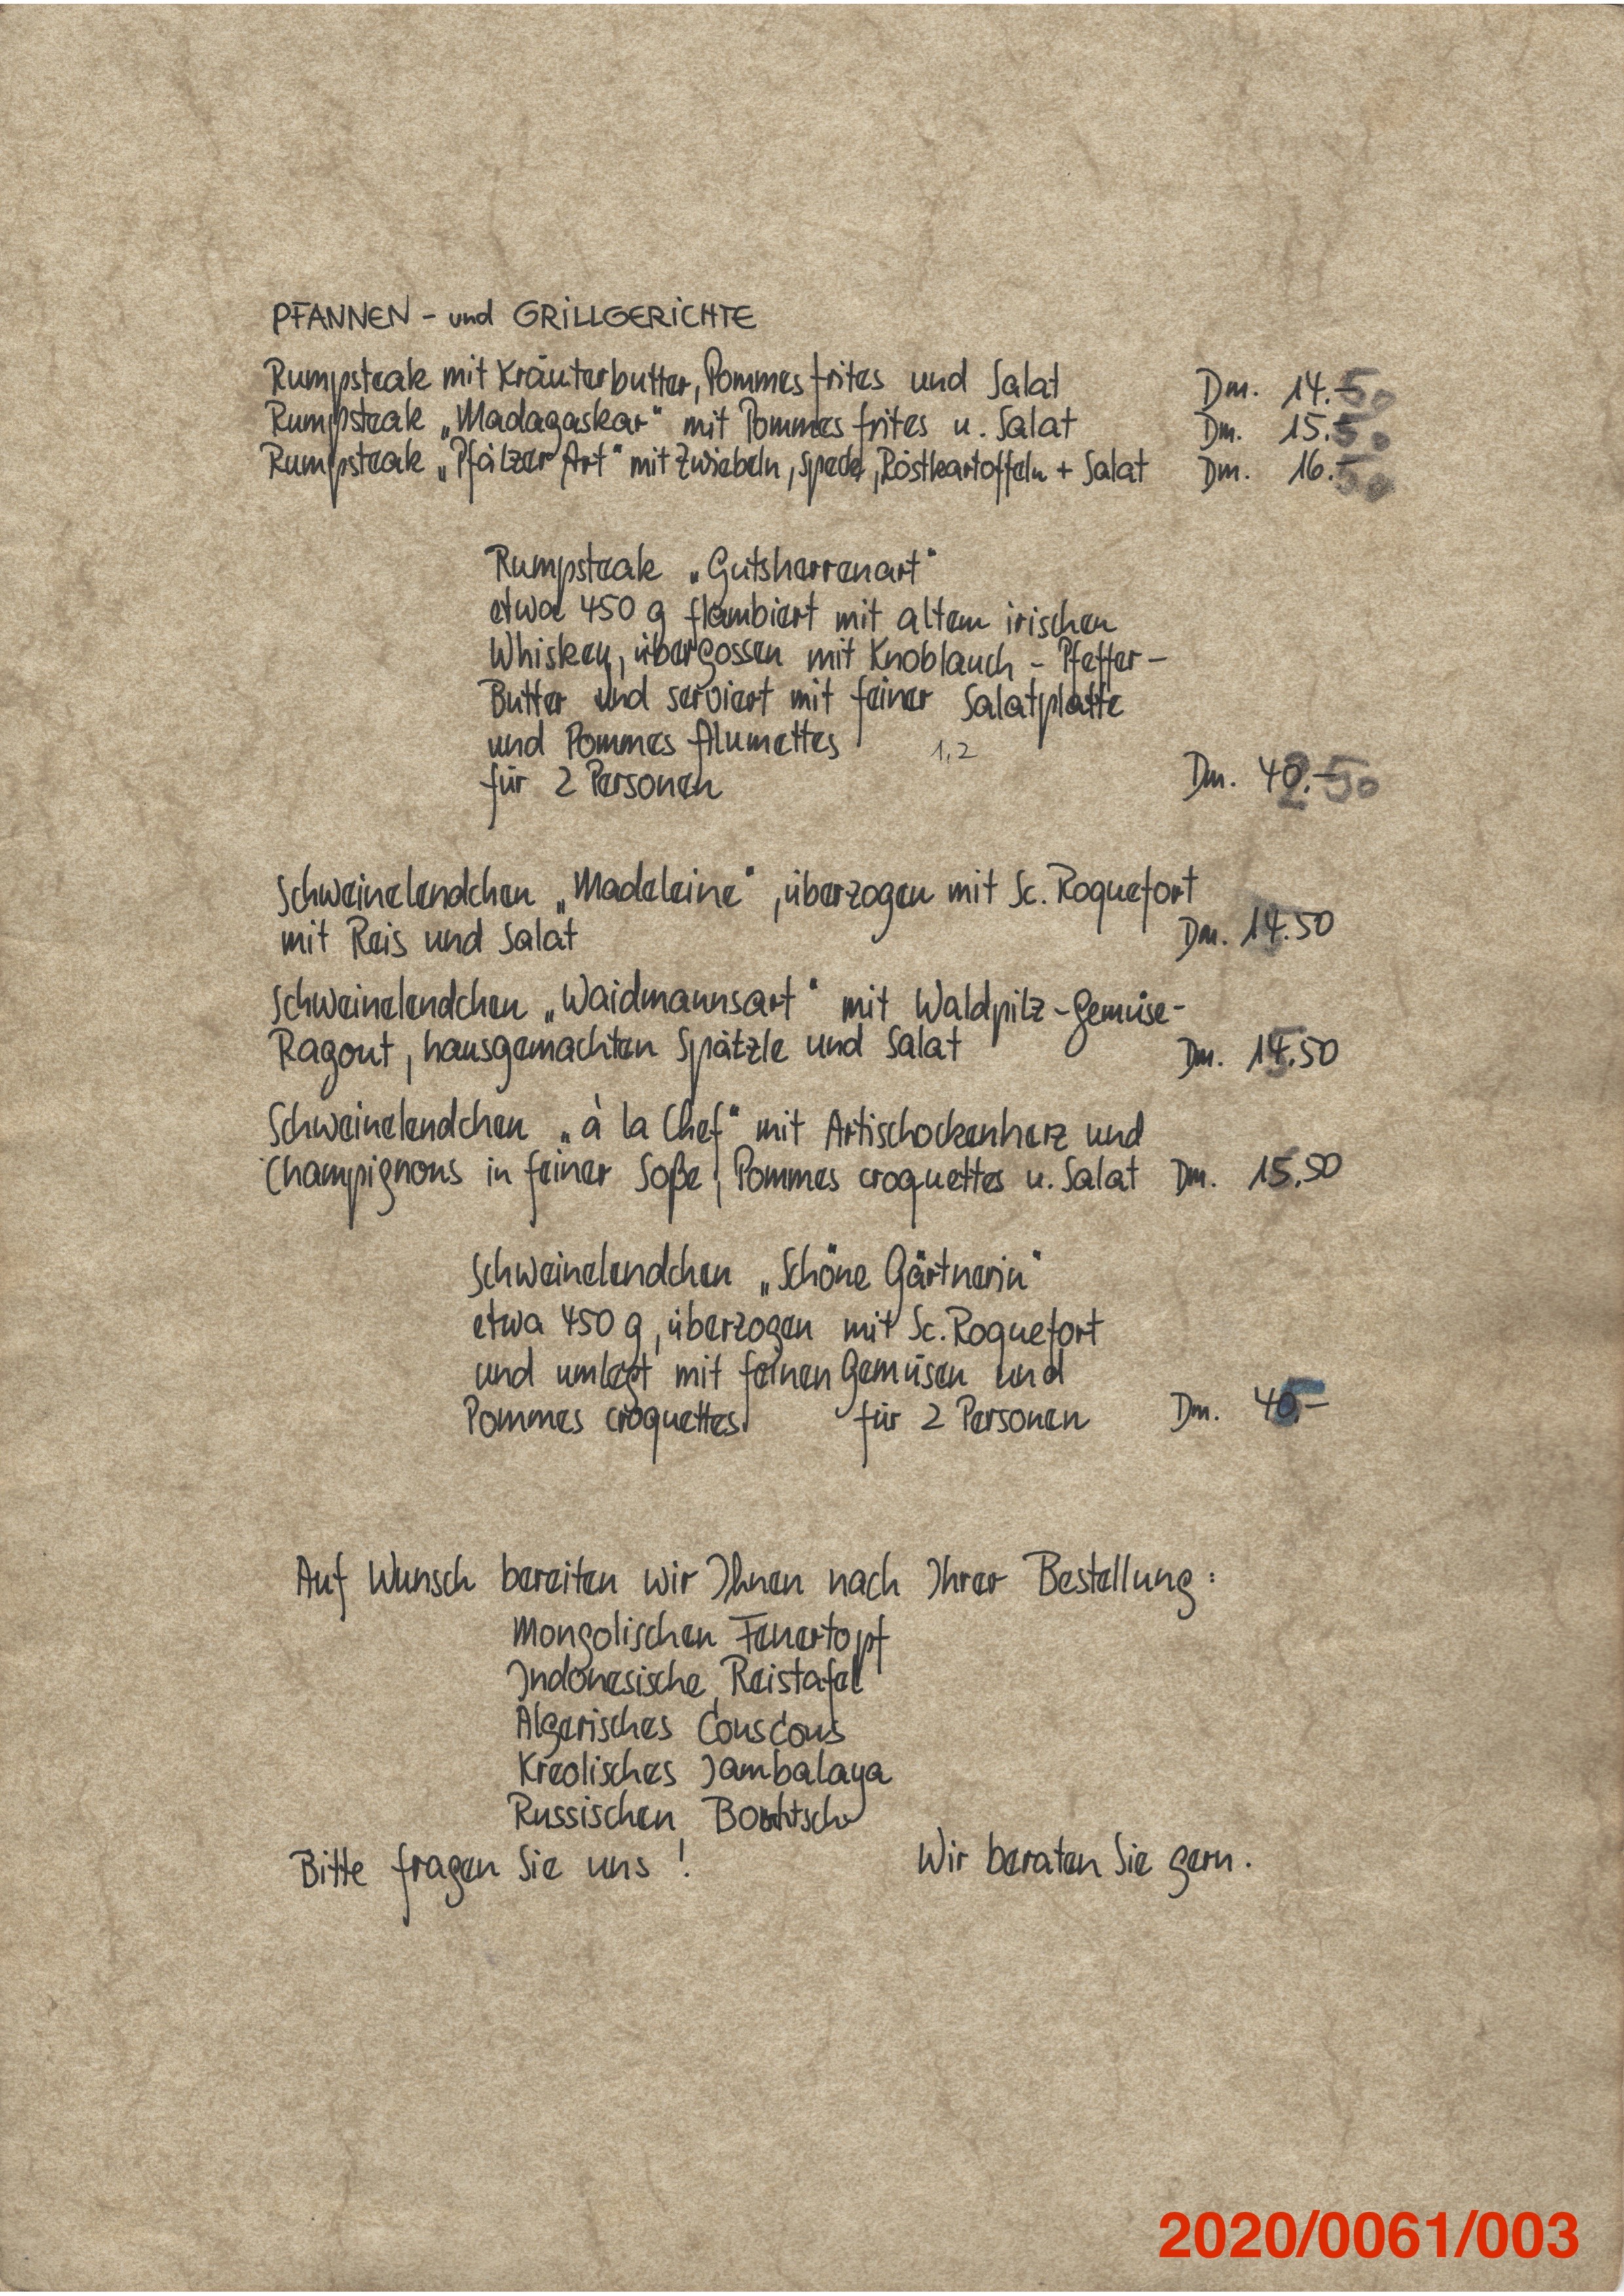 Speisekarten der Gaststätte "Zum Haseneck" Bad Dürkheim (Museumsgesellschaft Bad Dürkheim e.V. CC BY-NC-SA)